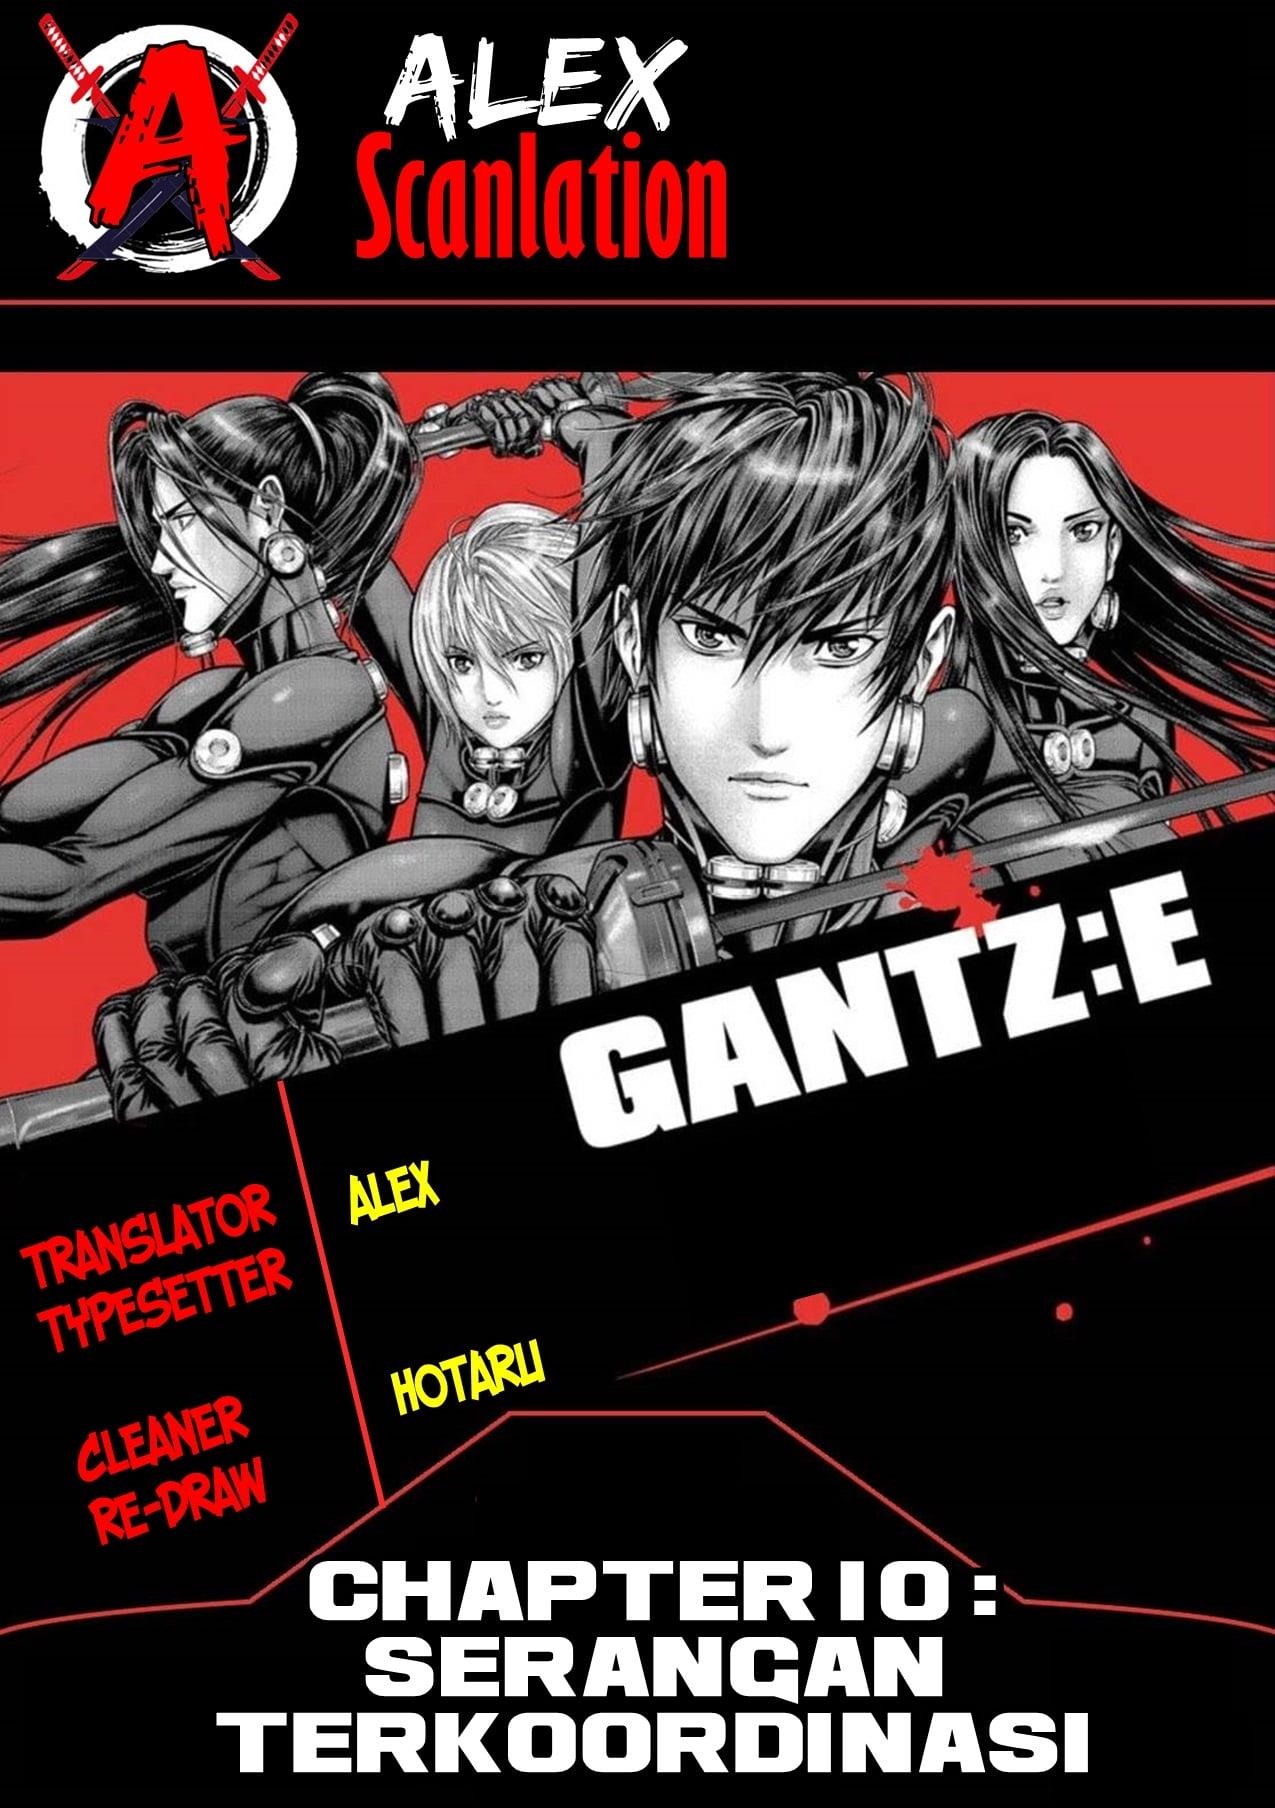 Gantz:E Chapter 10